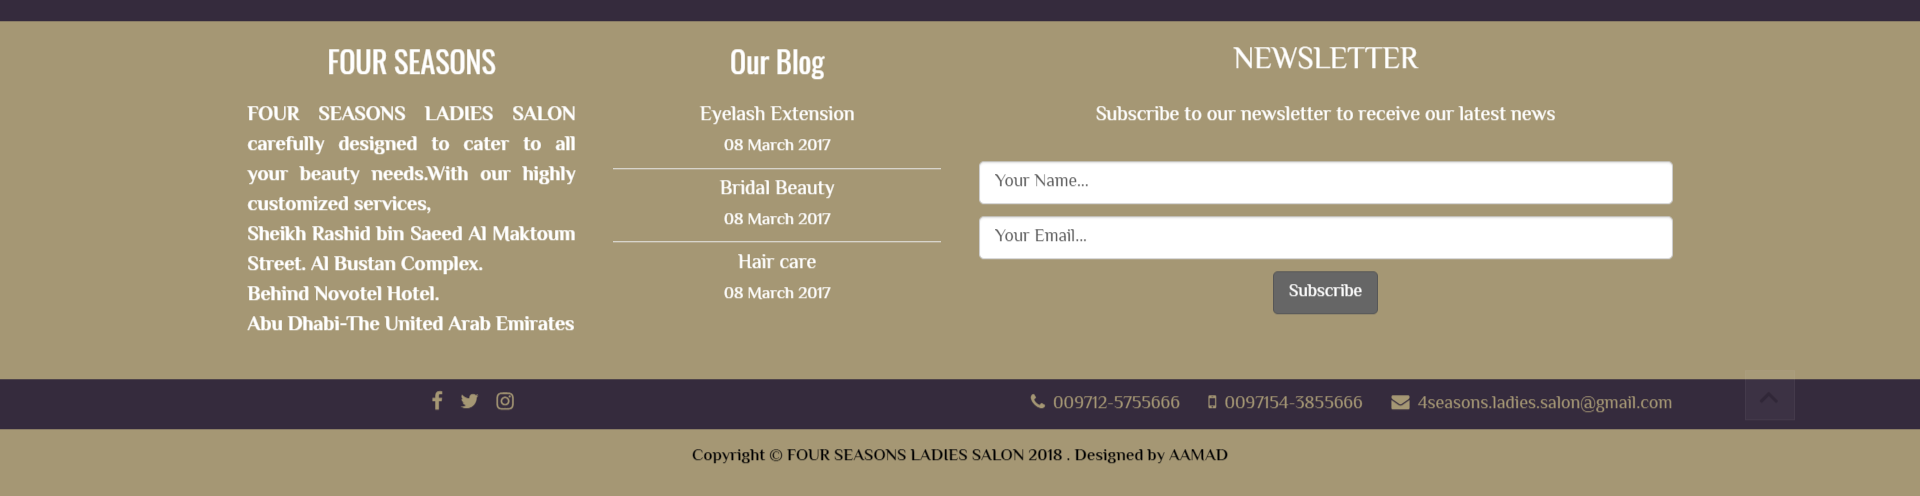 تصميم موقع اليكتروني أحترافي لصالون تجميل فى المدينة المنورة - السعودية